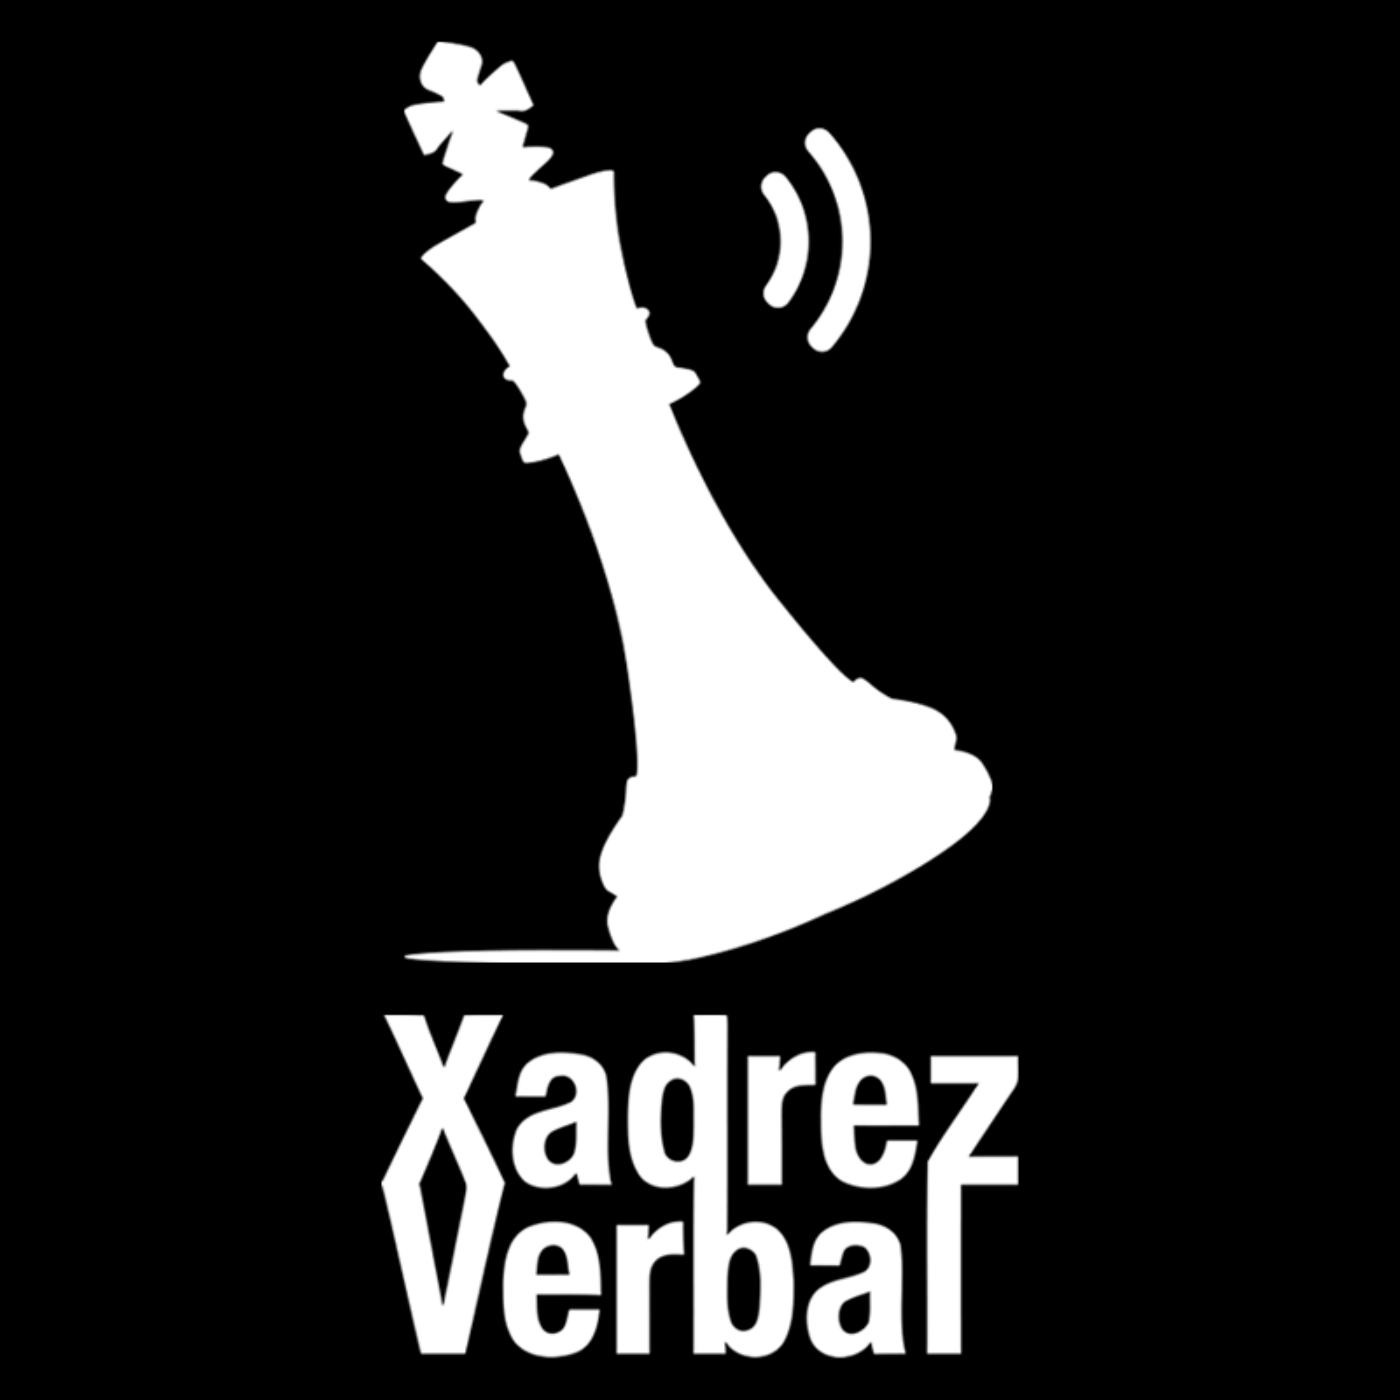 Xadrez Verbal Podcast #349 – Golpe no Gabão